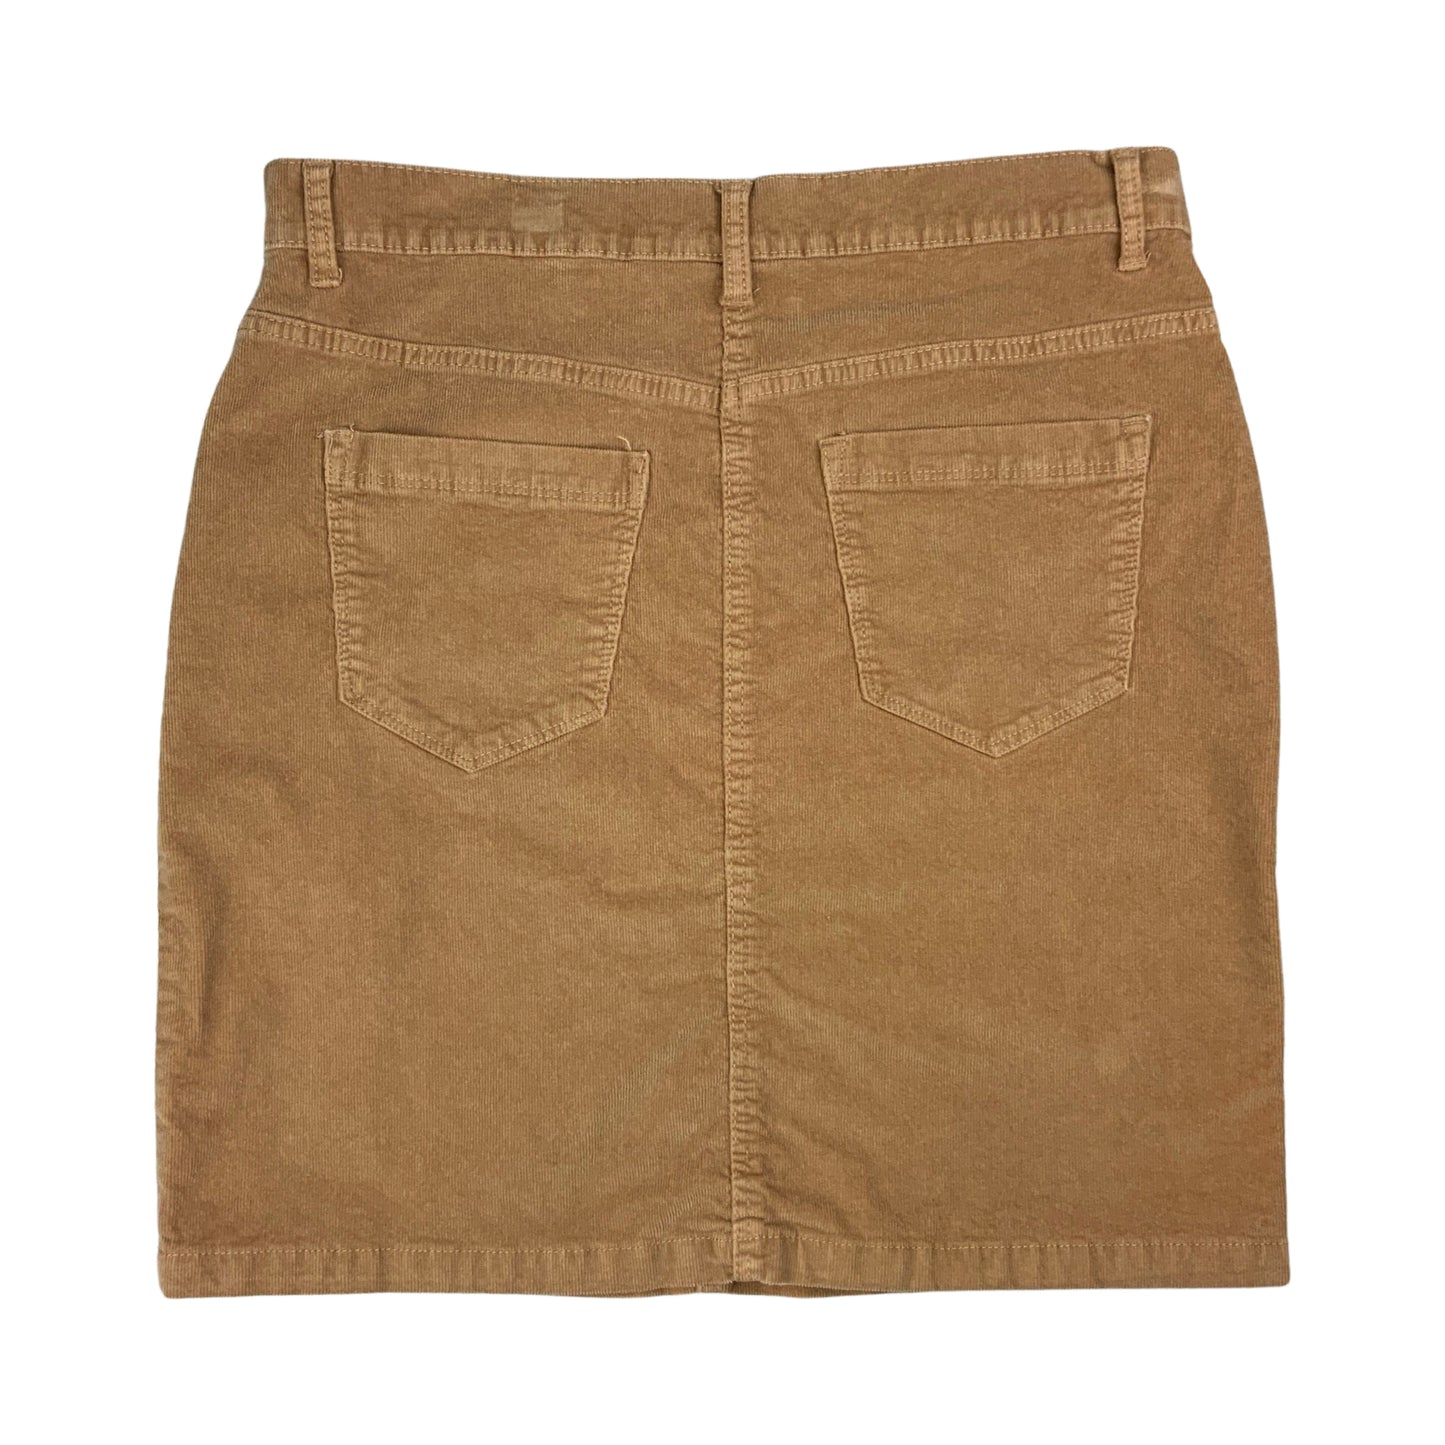 Brown Corduroy Skirt 16